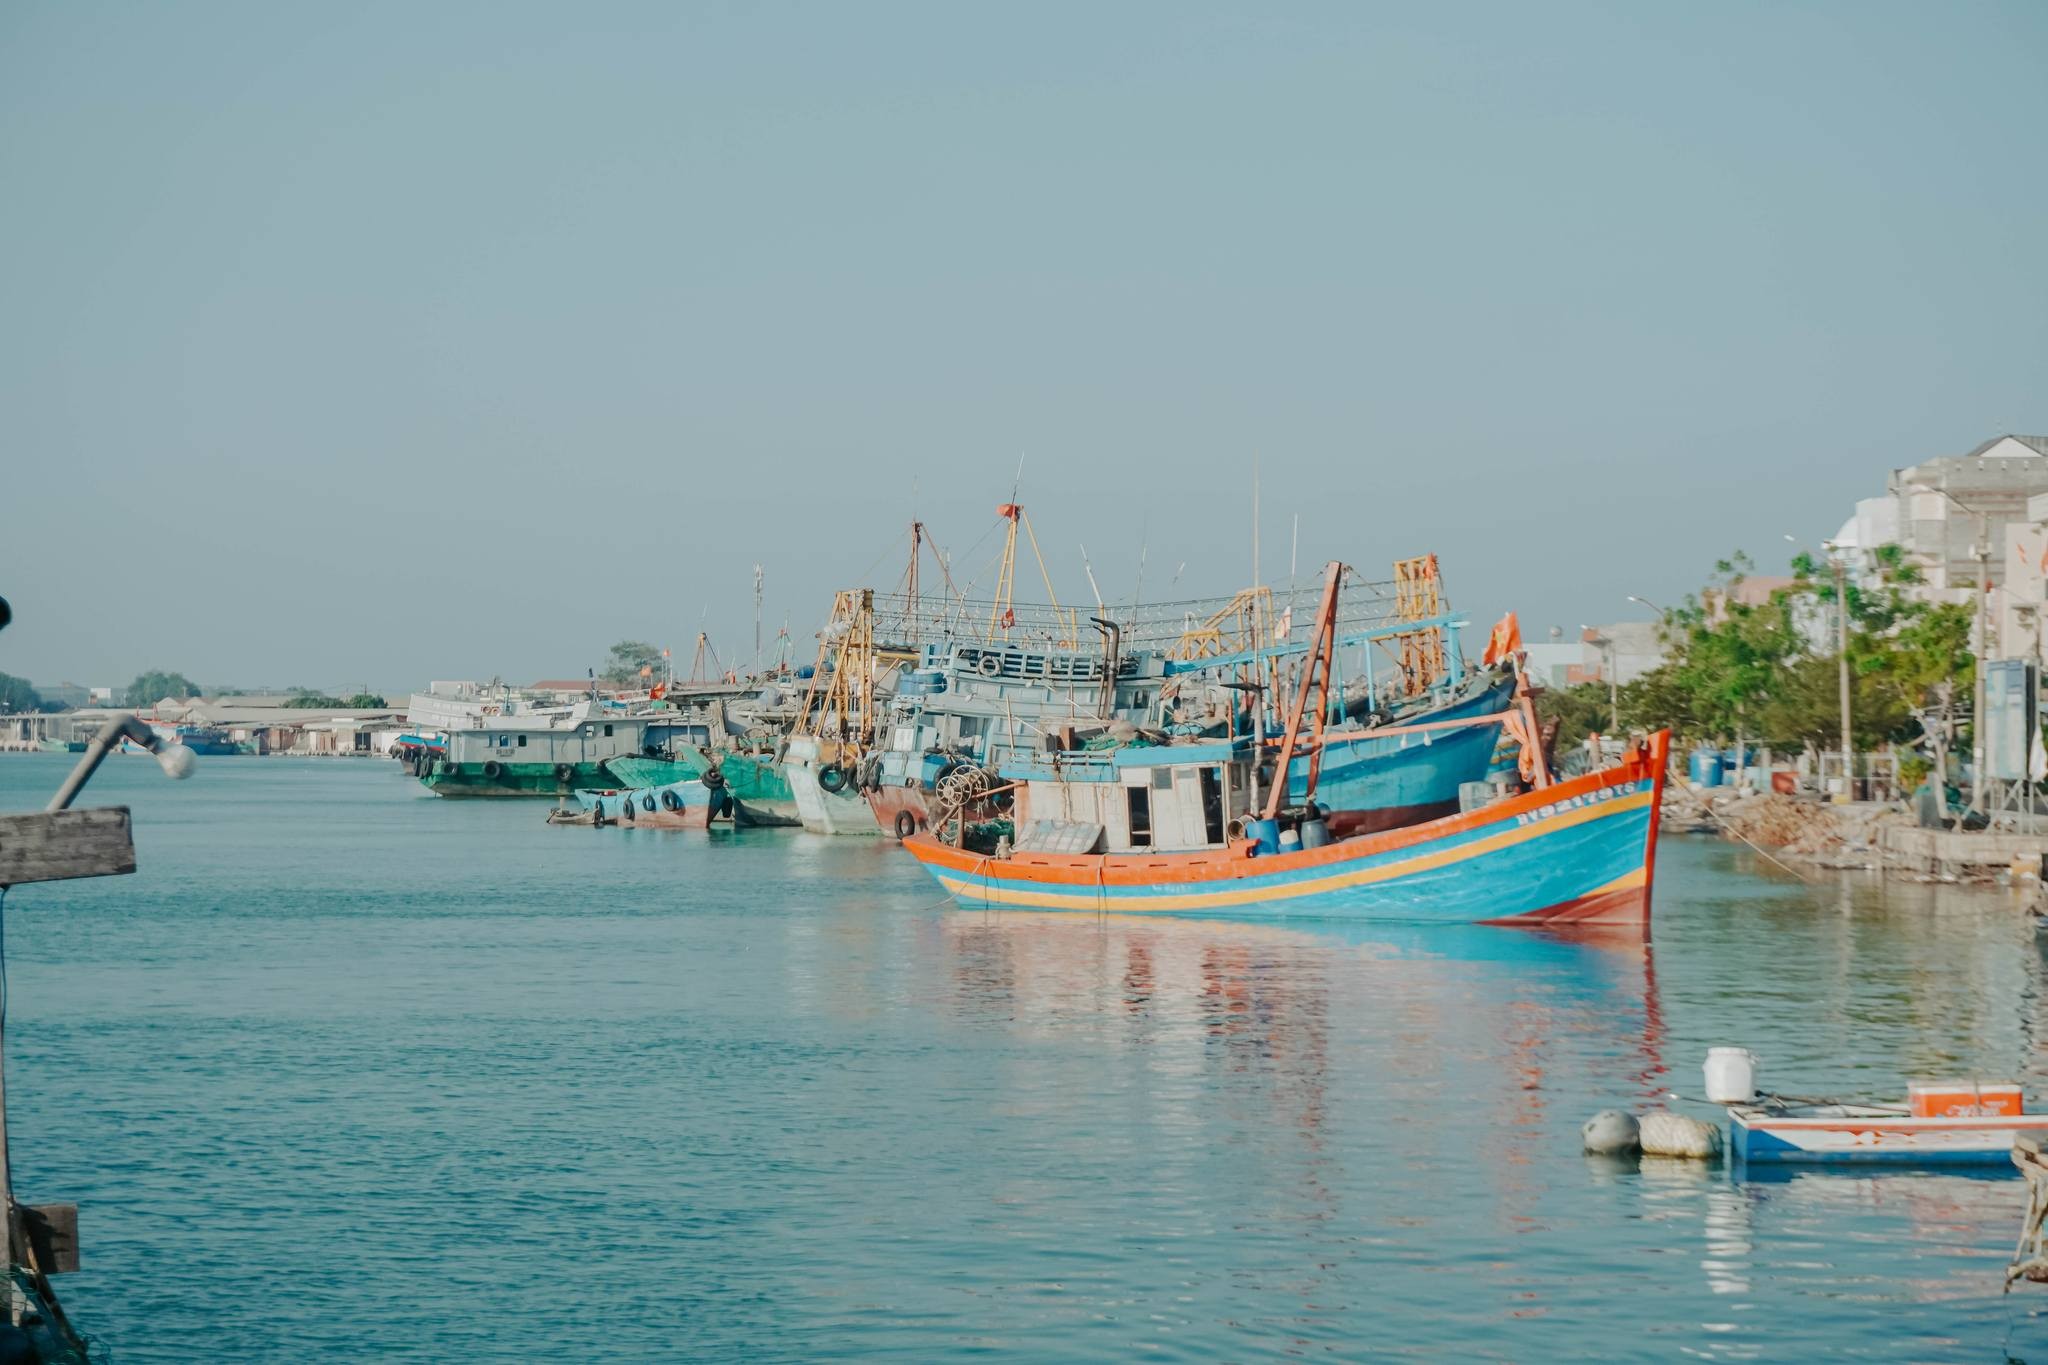 Khám phá làng chài “tỷ phú” bình yên và thơ mộng bên bờ biển Vũng Tàu